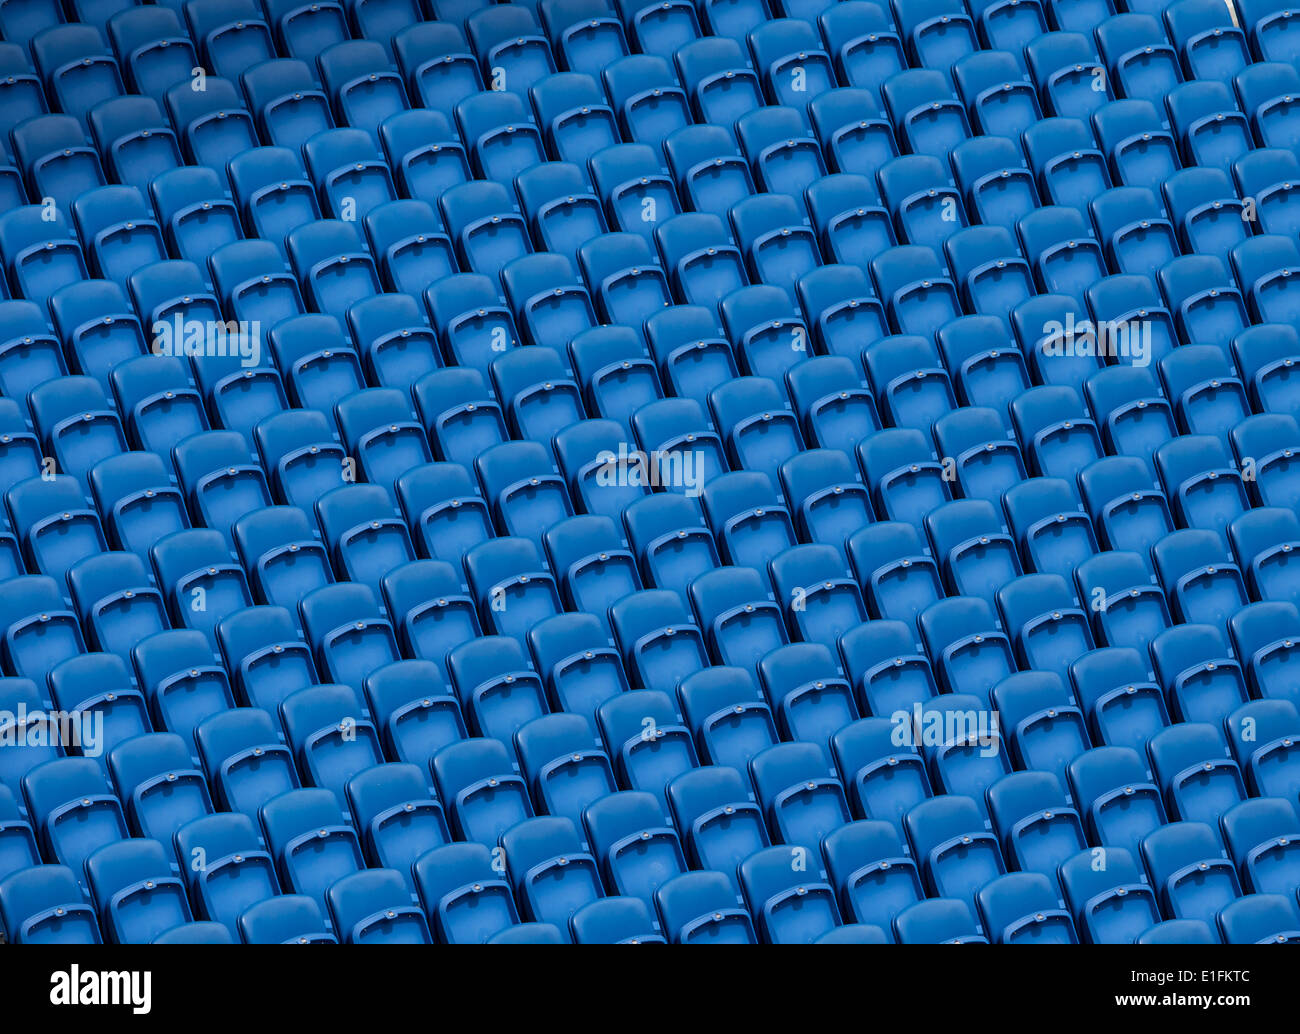 Fußball Stadion Sitzplätze blau Stockfoto